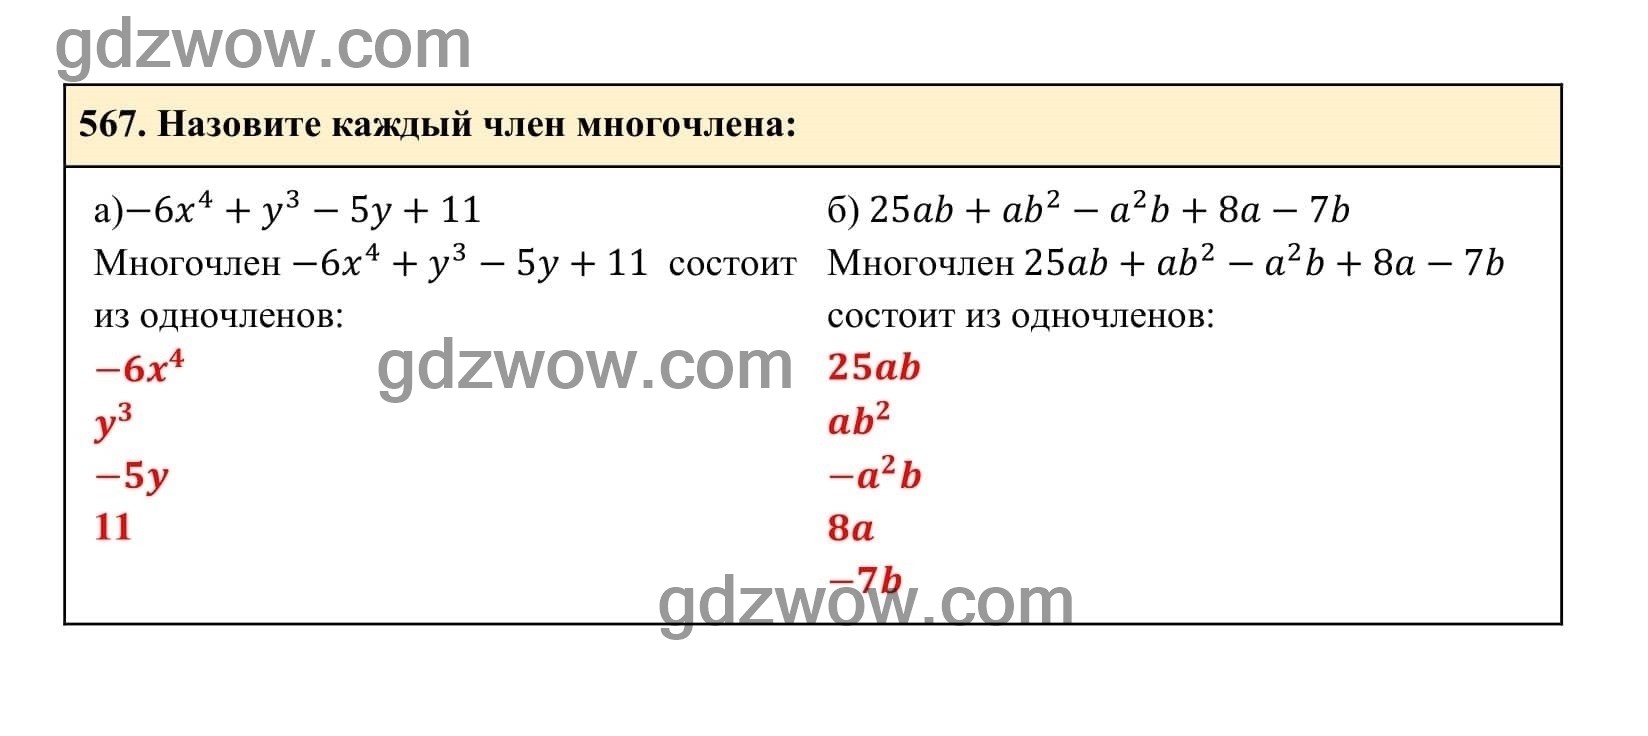 Упражнение 567 - ГДЗ по Алгебре 7 класс Учебник Макарычев (решебник) - GDZwow